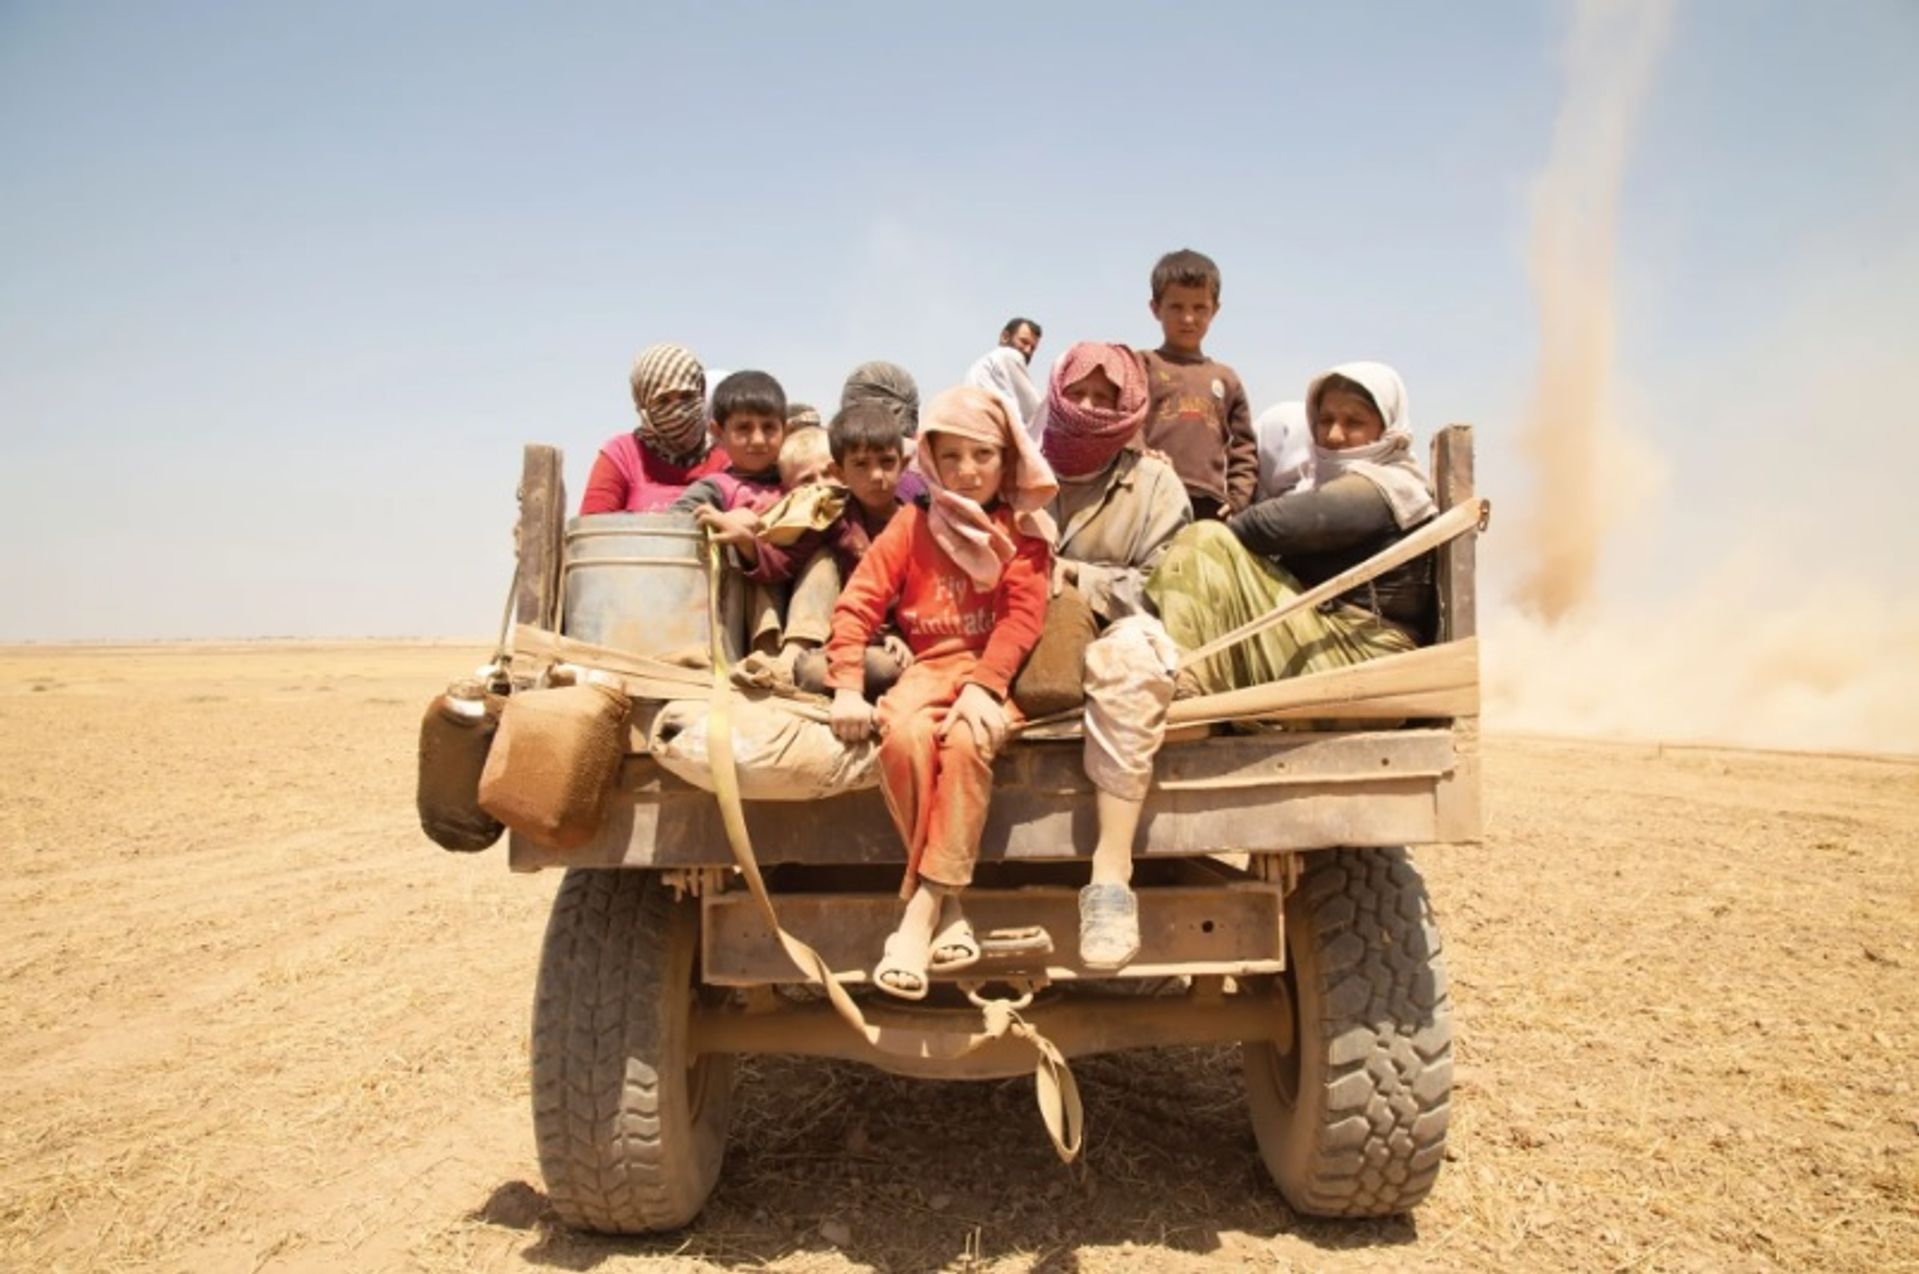 יזידים נמלטים על משאית, סינג'אר, עיראק, 2014.

צילום: זמננקו איסמאל. באדיבות Nobody's Listening

© Yazidi Cultural Archives